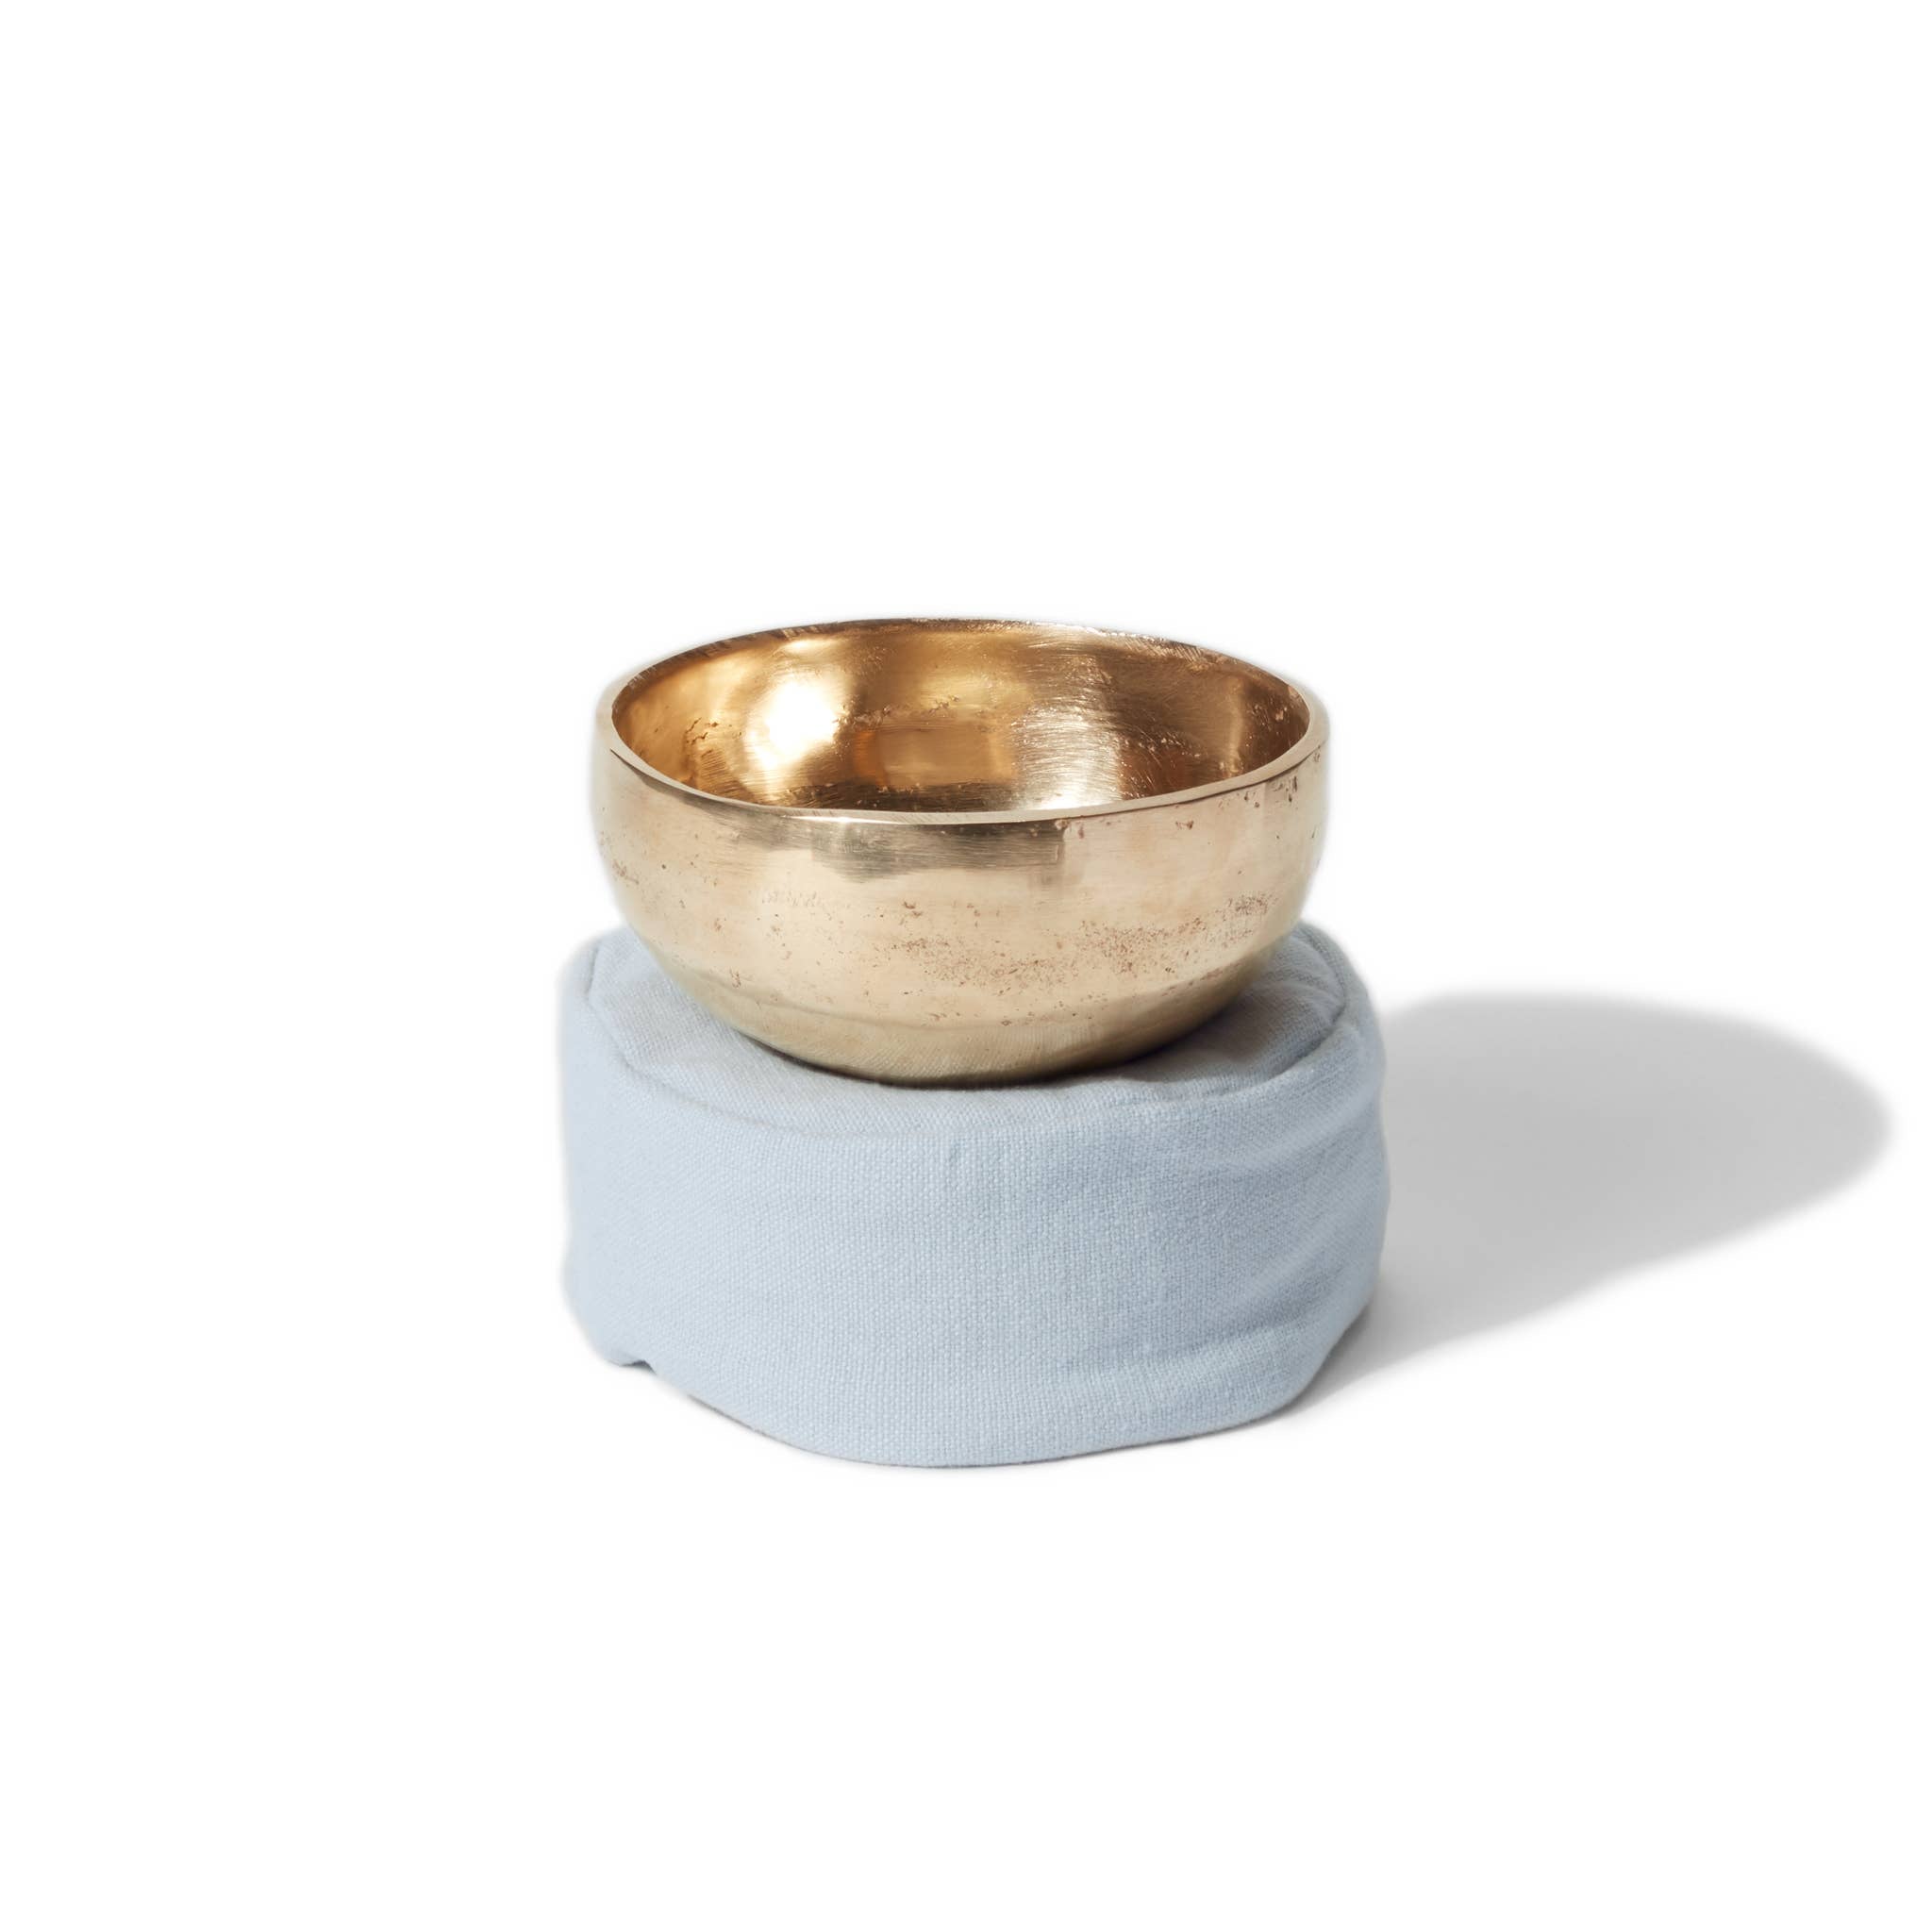 r e n o o  ||  meditation goods for the modern home - Seven Metals Meditation Sound Bowl - 4.5" - air